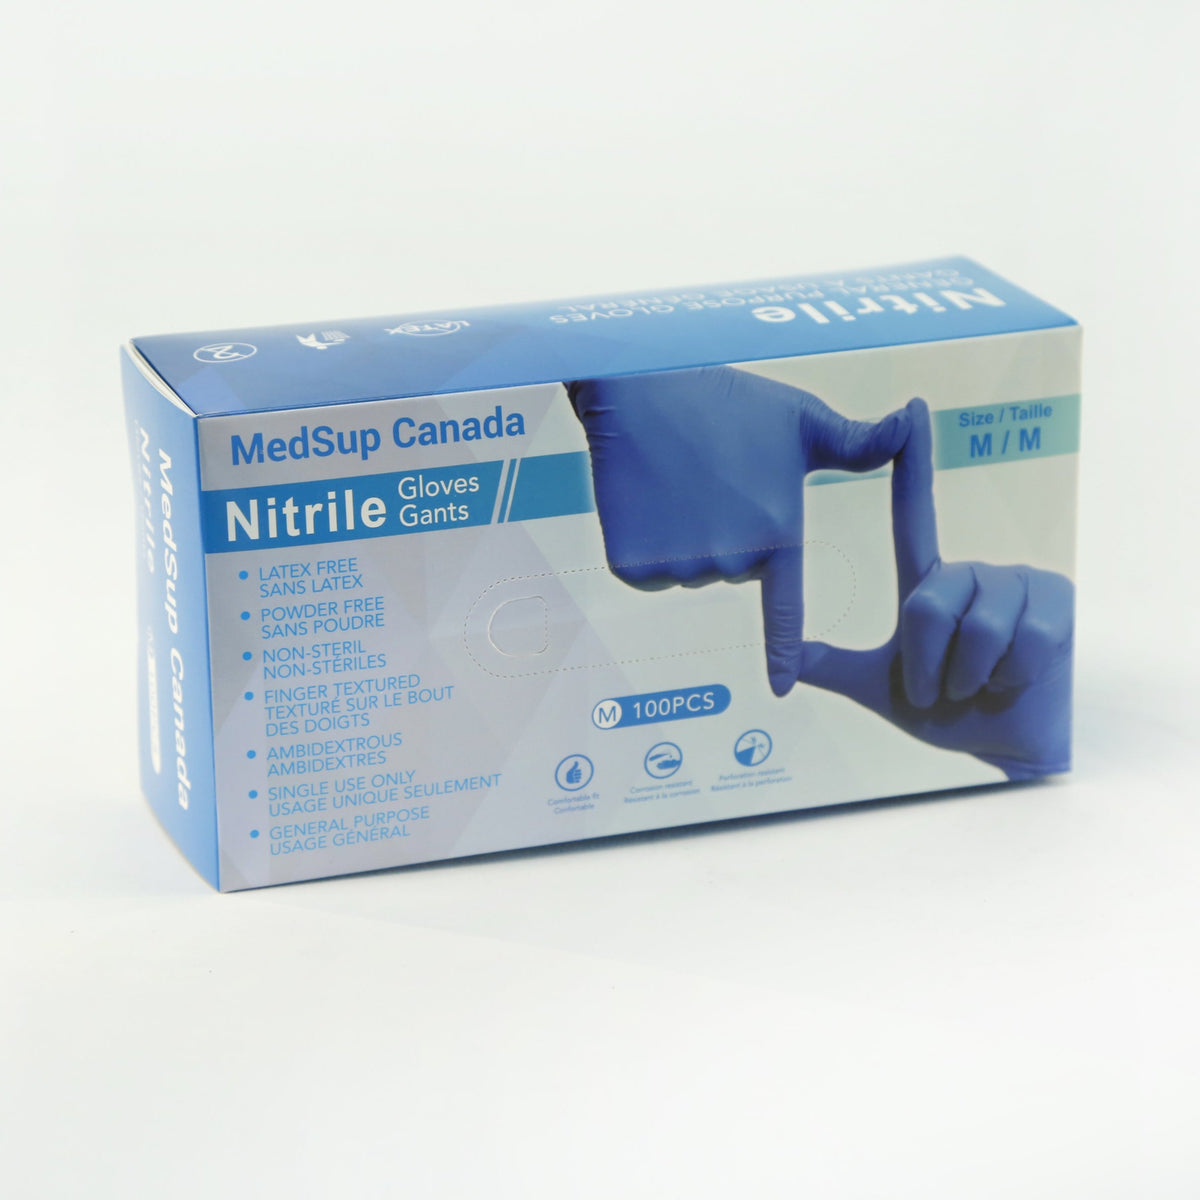 Nitrile Gloves, Large - MedSup Canada